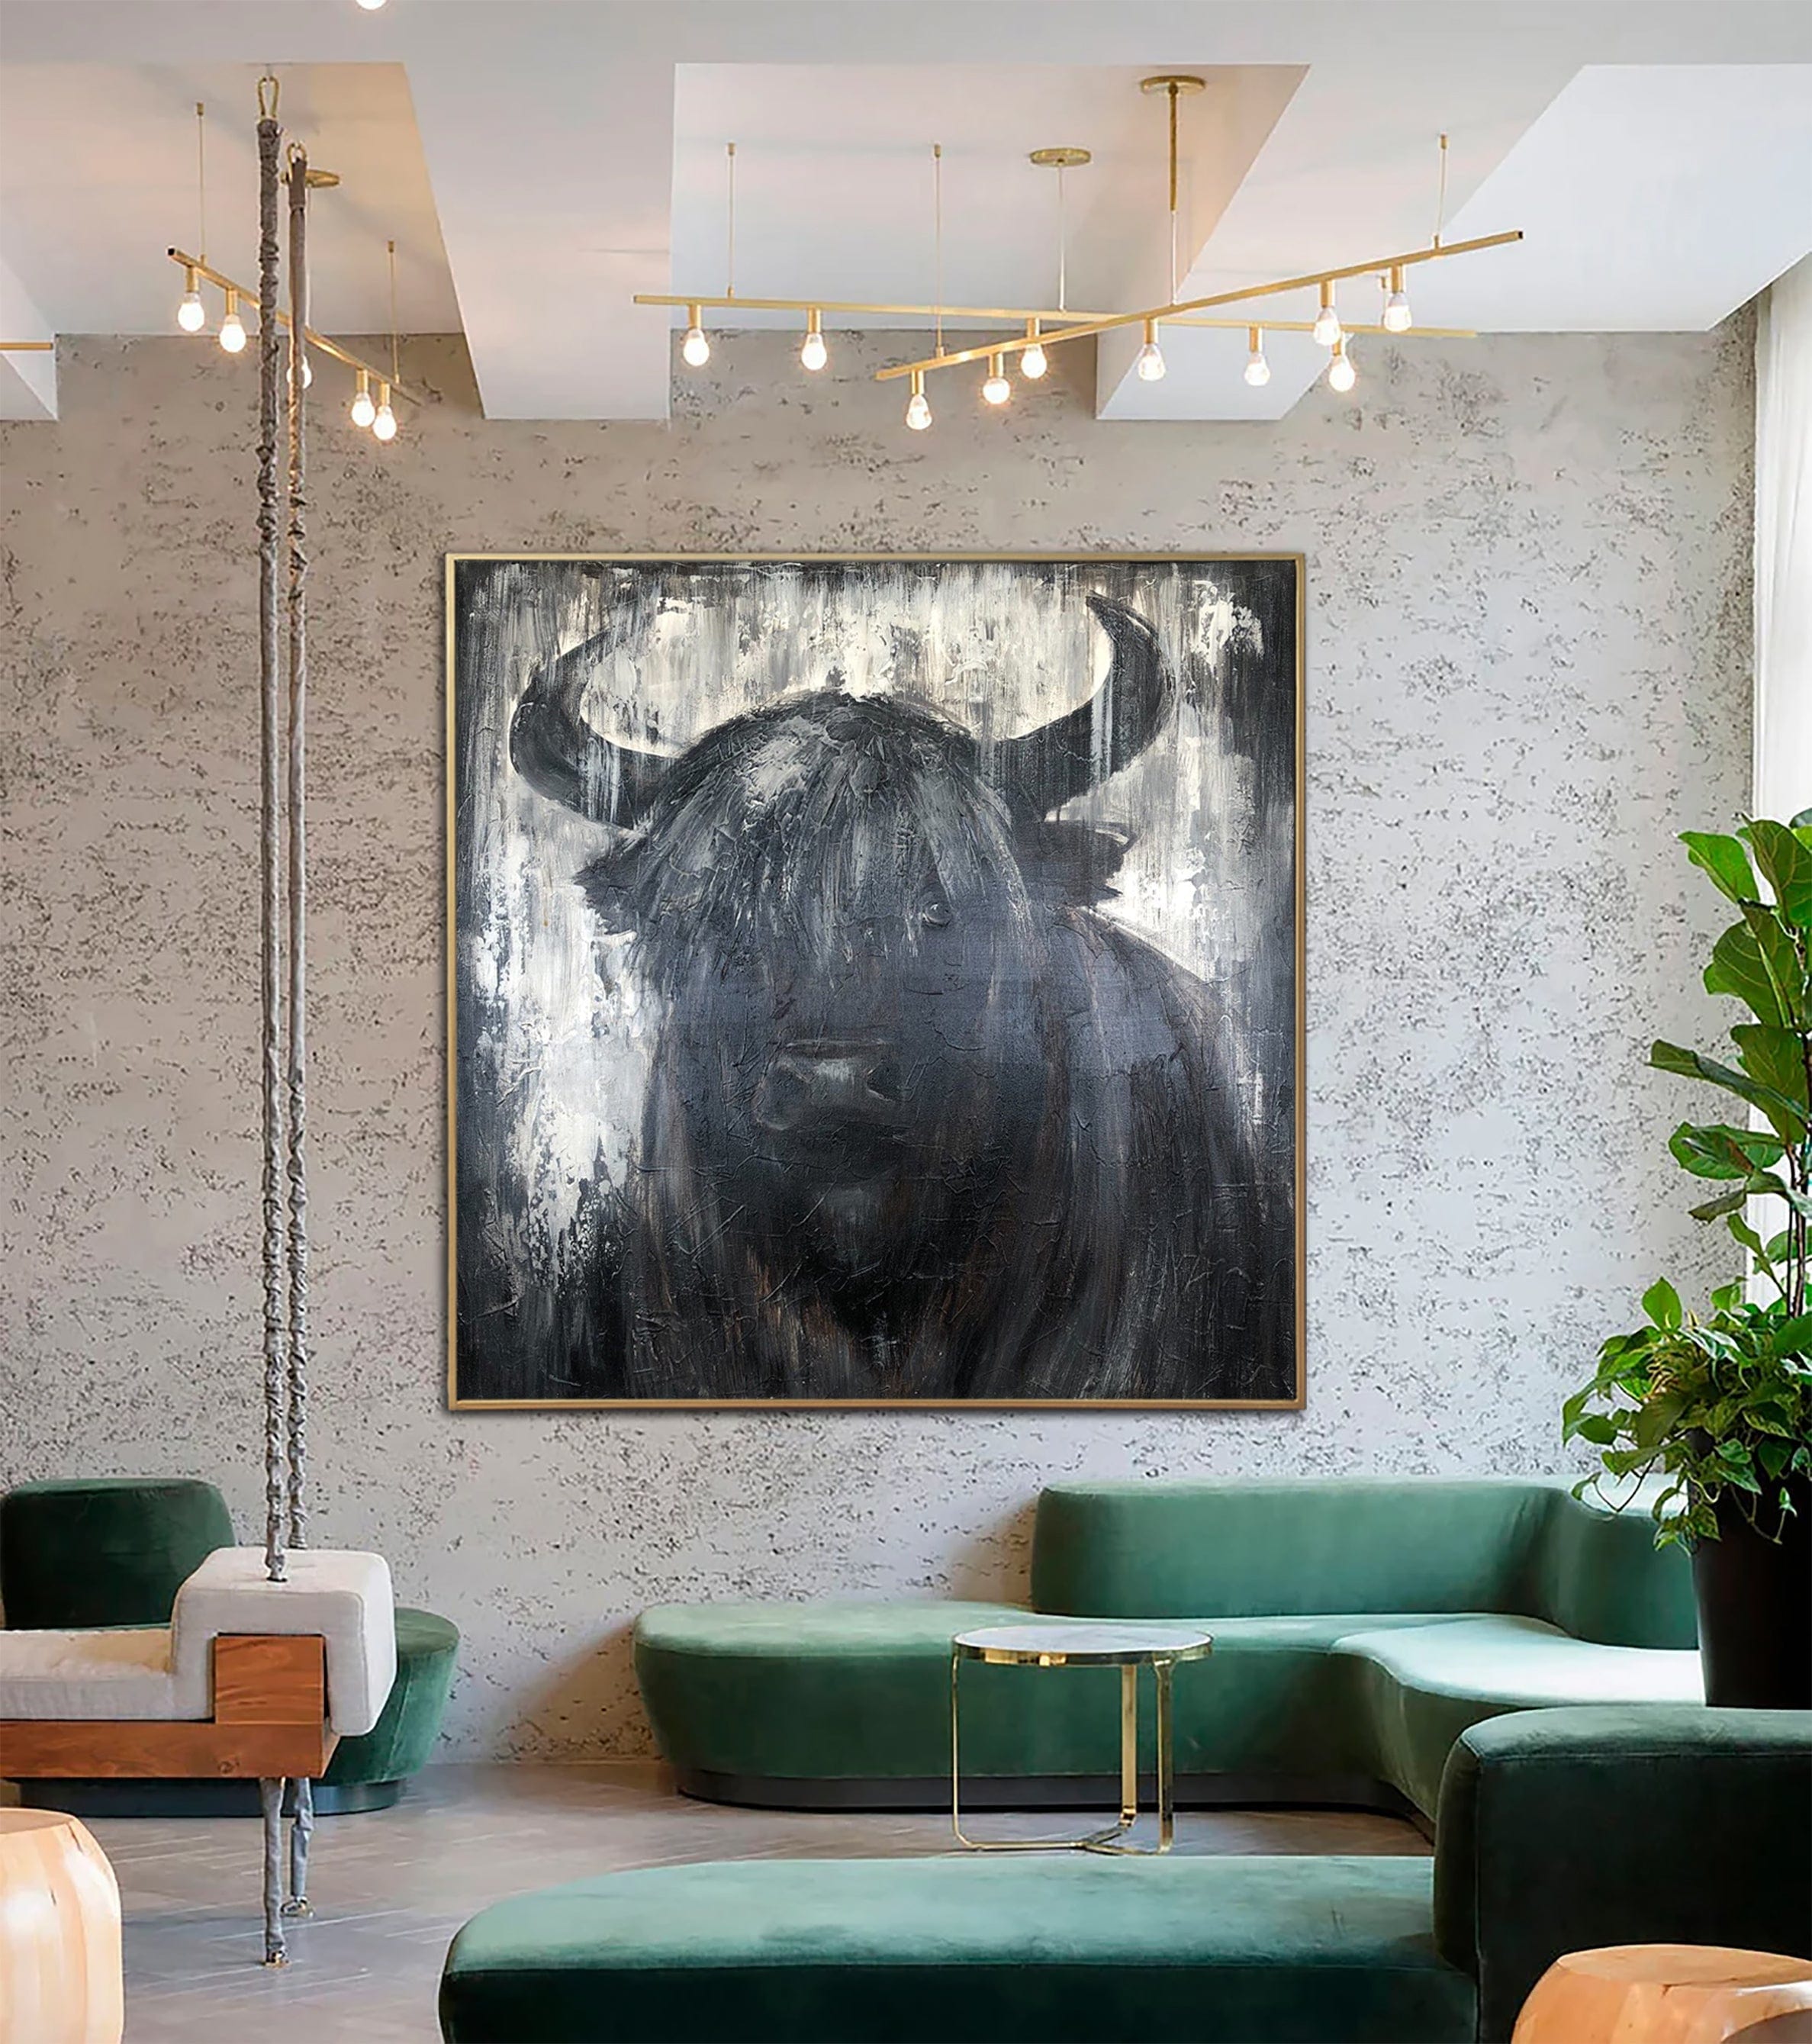 Grandes pinturas abstractas de toros sobre lienzo pintura de animales